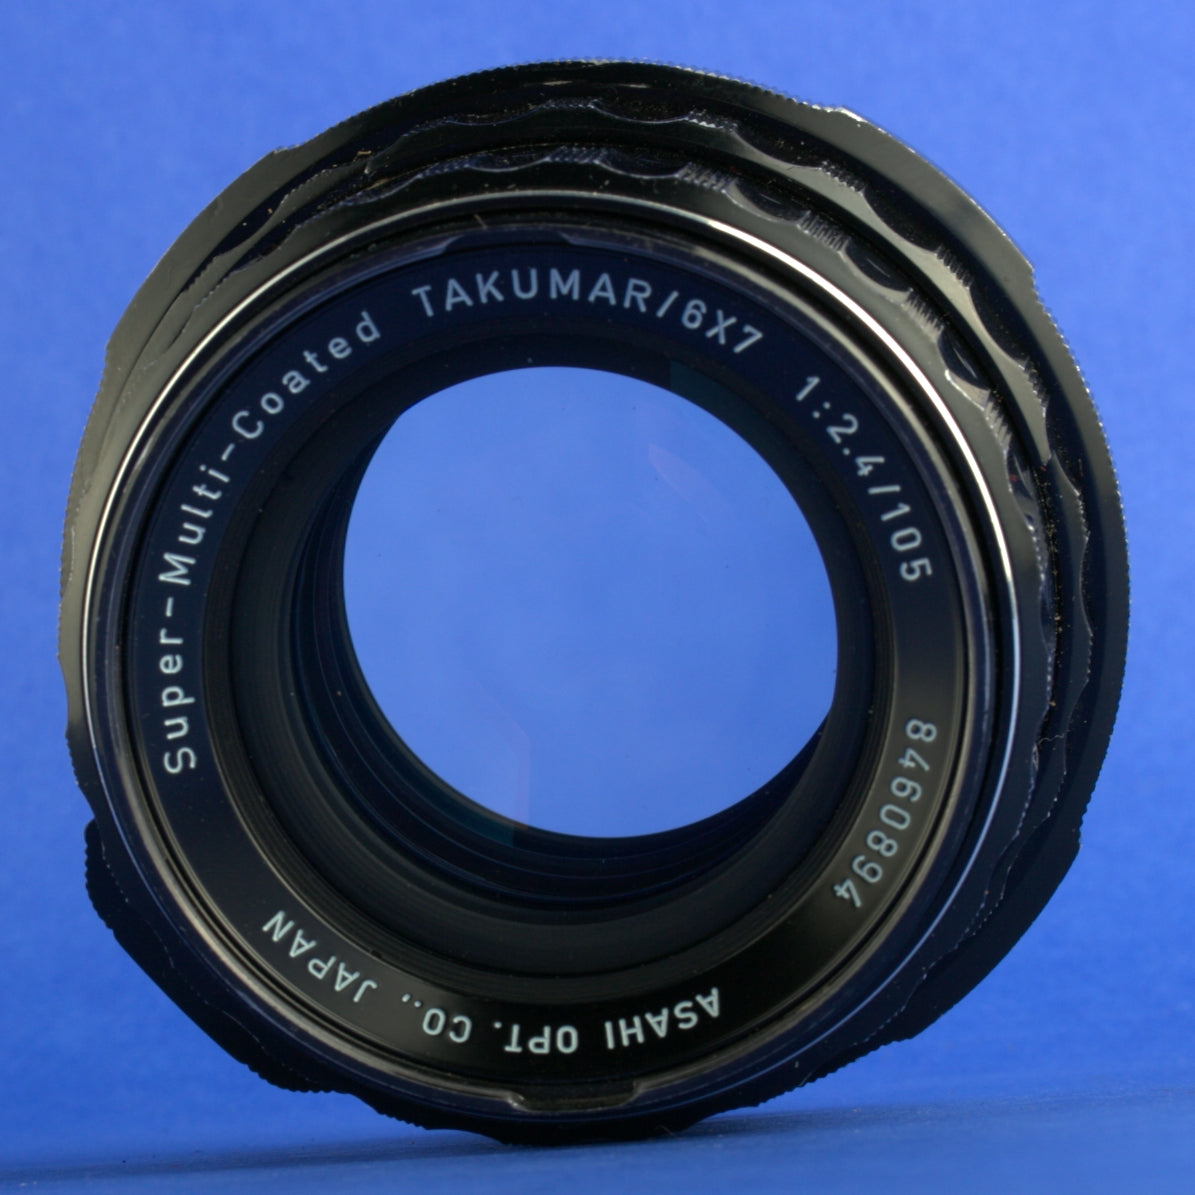 Pentax 6x7 105mm 2.4 Lens